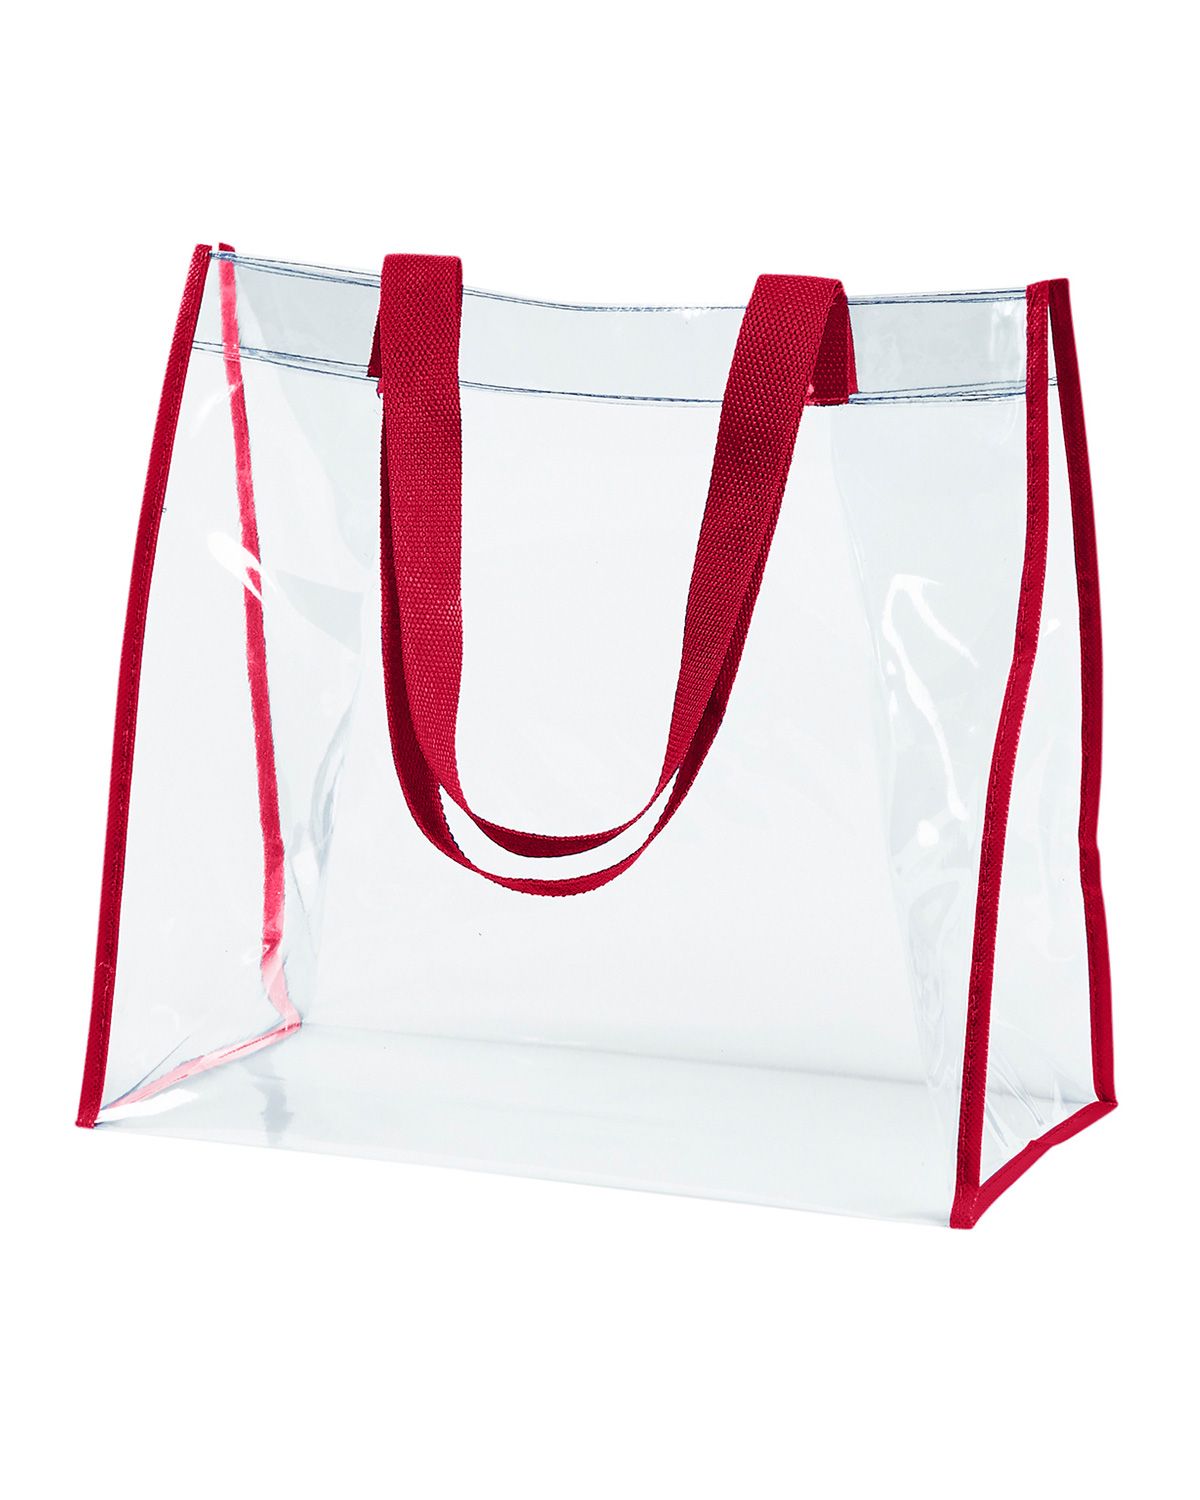 PVC Zipper Large Tote Bag, Capacity: 850 gm